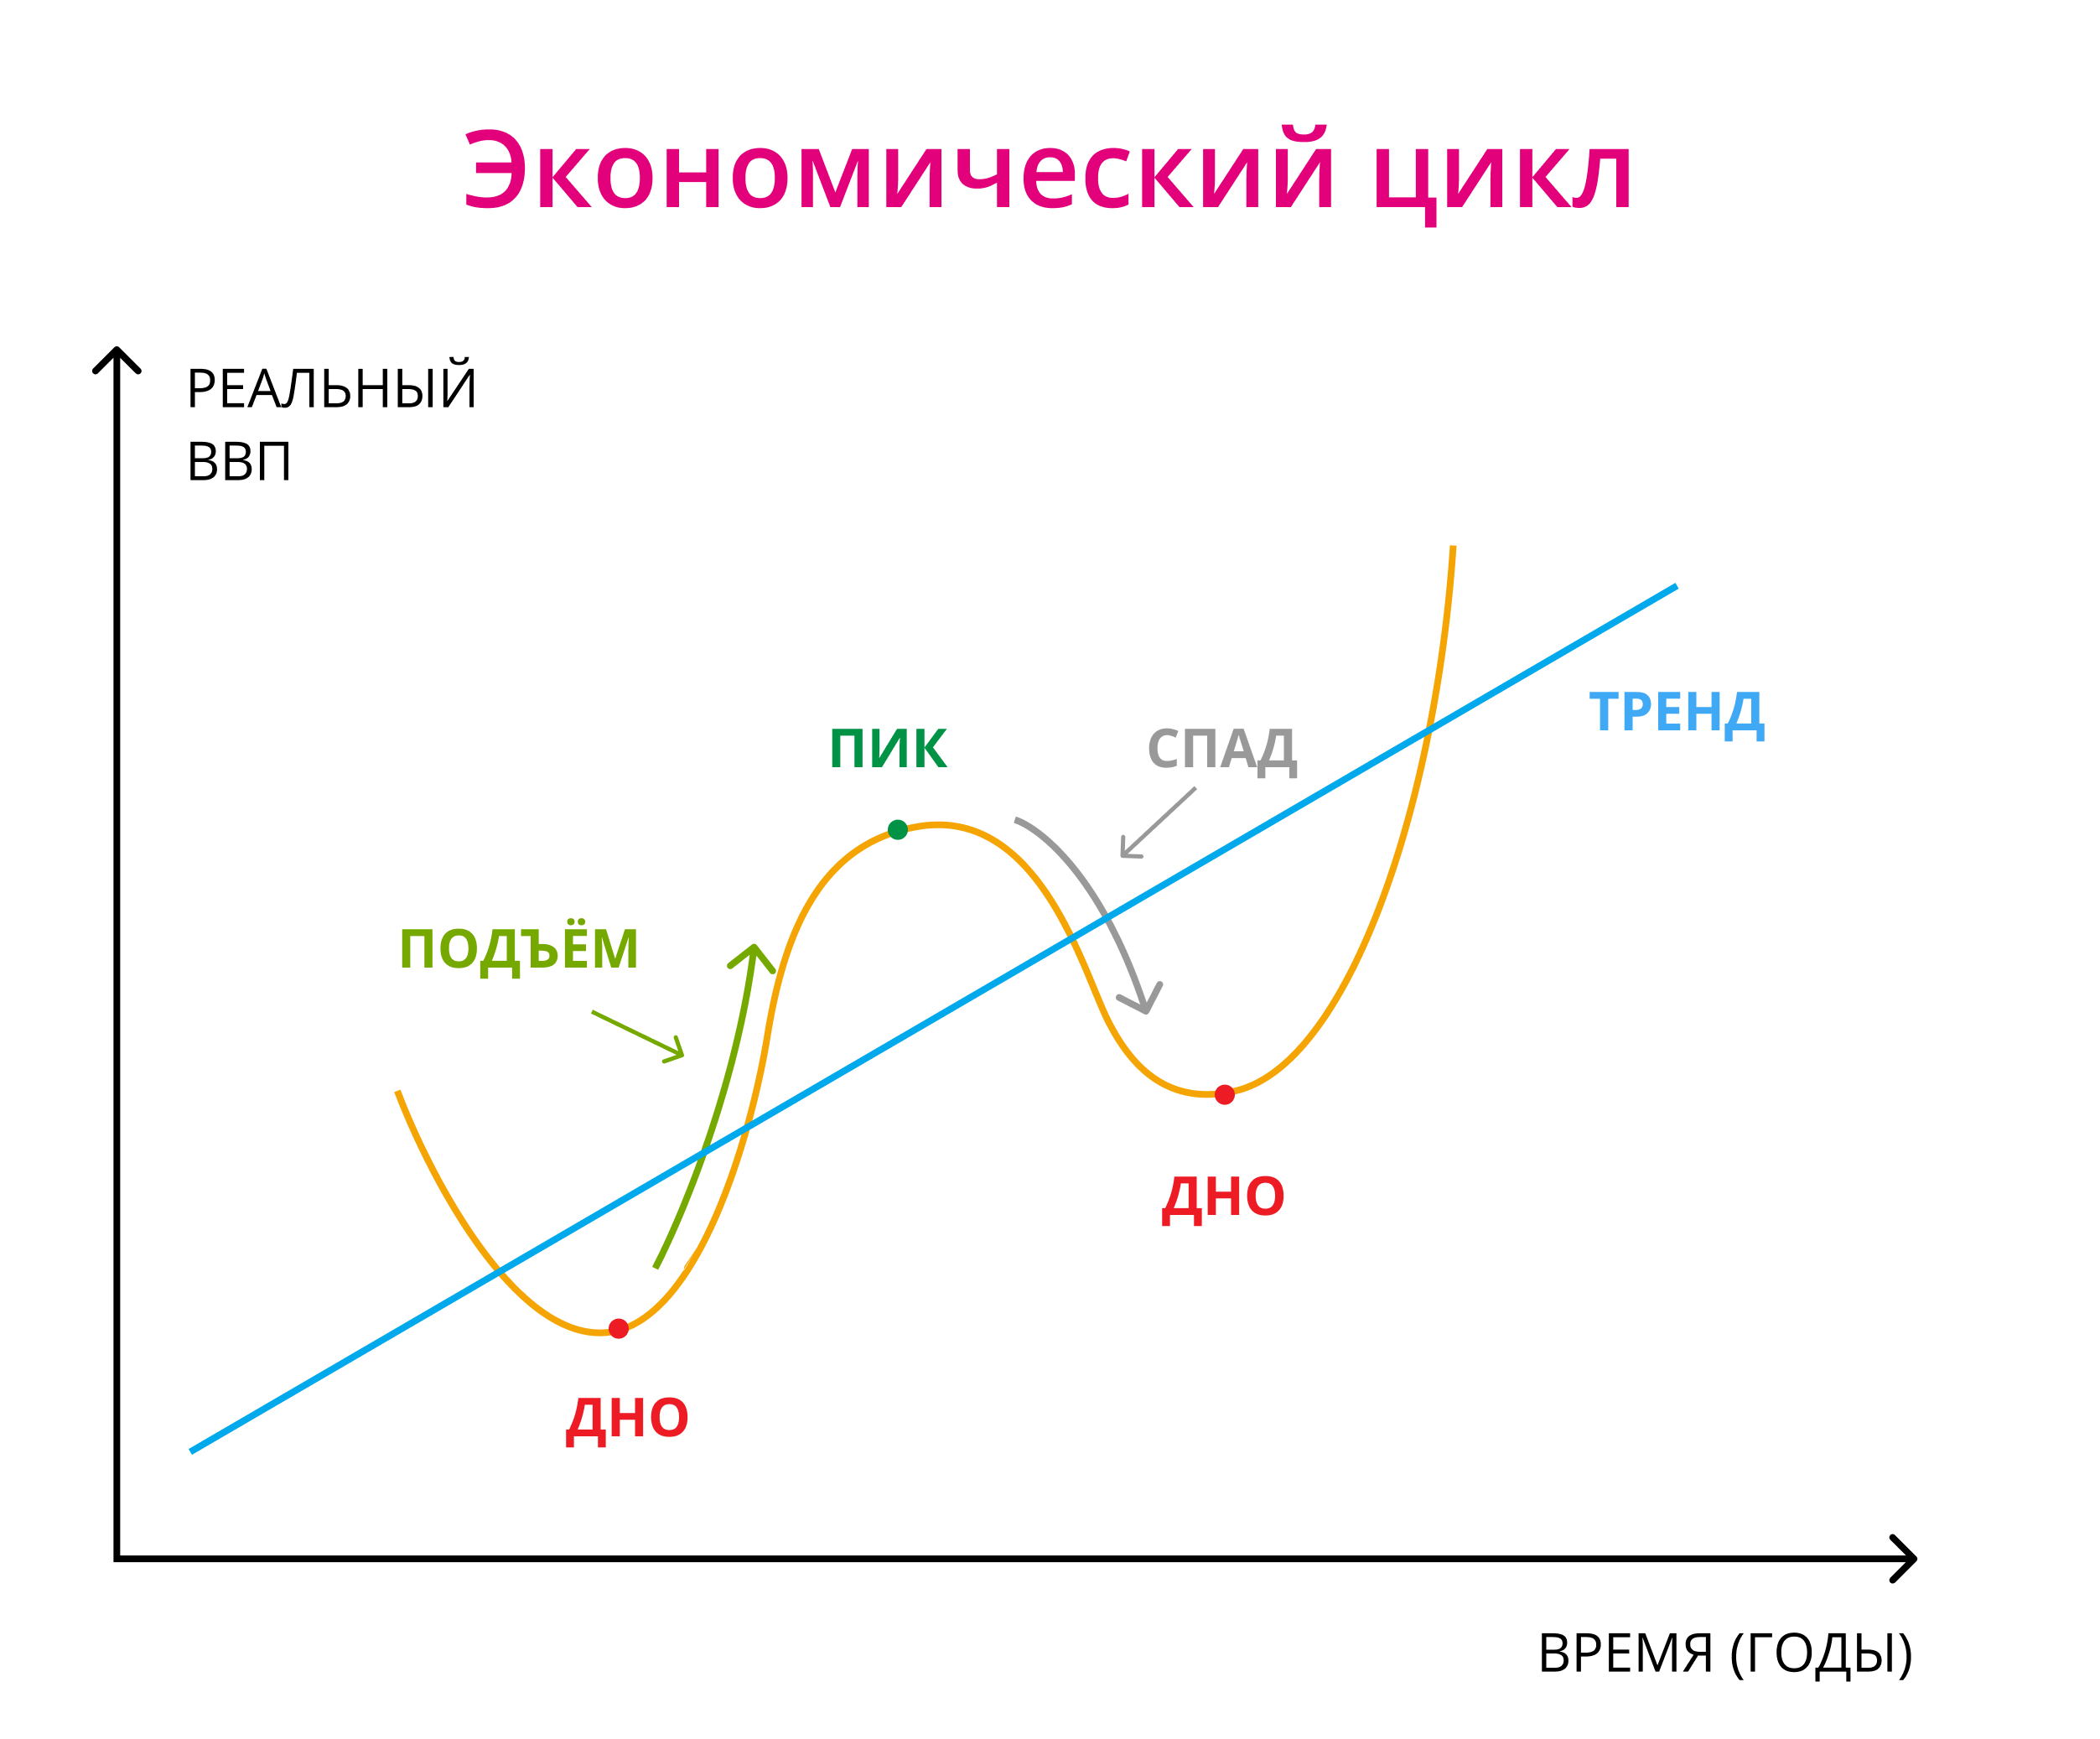 Экономический цикл фазы экономического цикла. Показатели экономических циклов (фаза подъема и спада). Схема экономического цикла. Фаза роста экономического цикла.